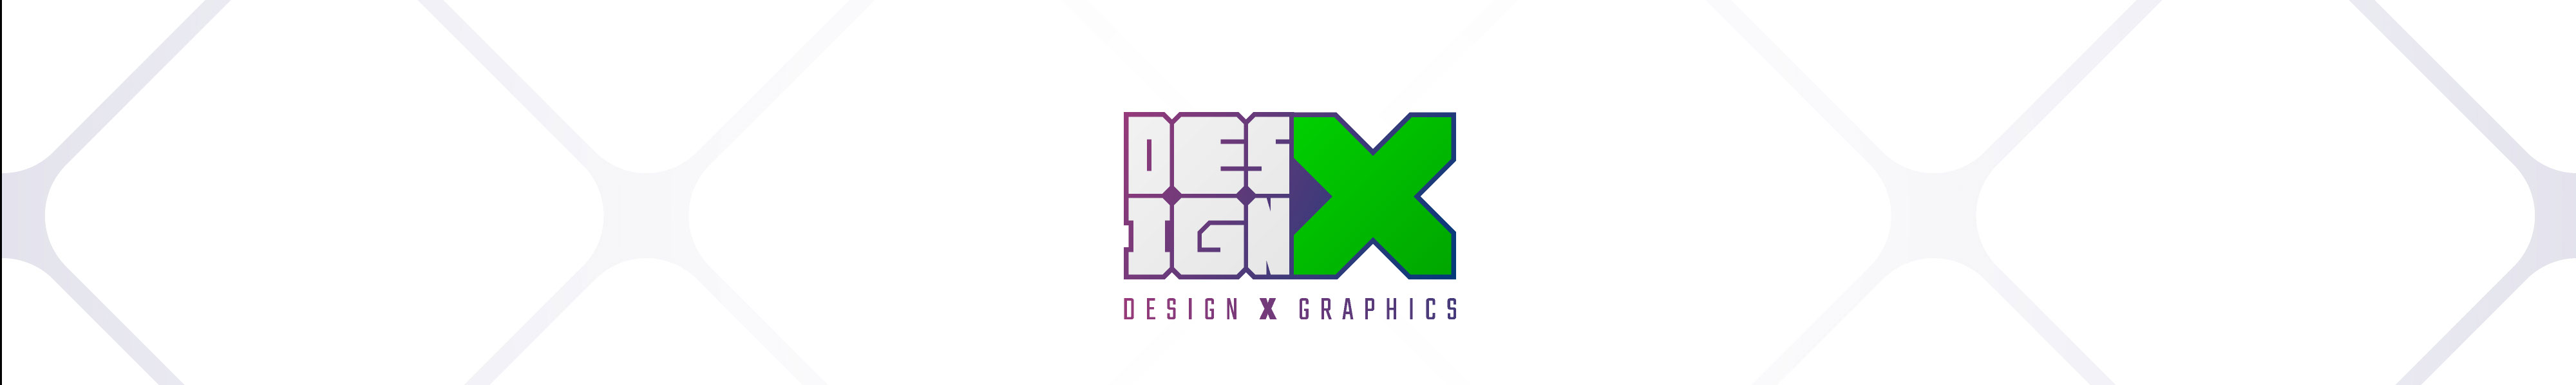 Banner de perfil de DESIGN X